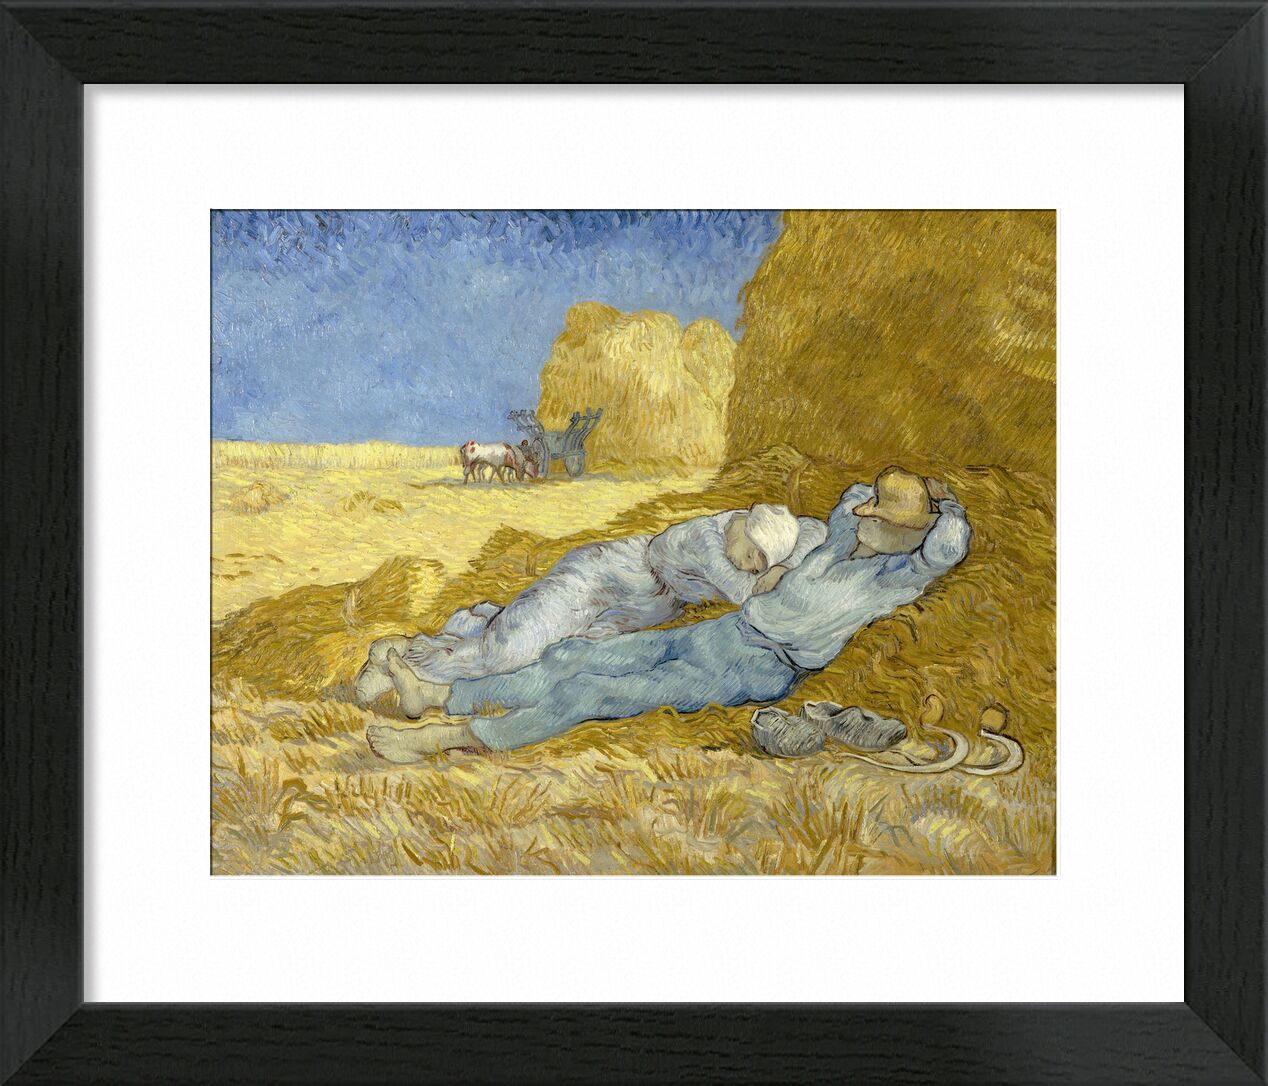 Die Siesta (Nach der Hirse)  - Van Gogh von Bildende Kunst, Prodi Art, Nickerchen, Bauer, Heu, Natur, Mann, Frau, Van gogh, Bauer